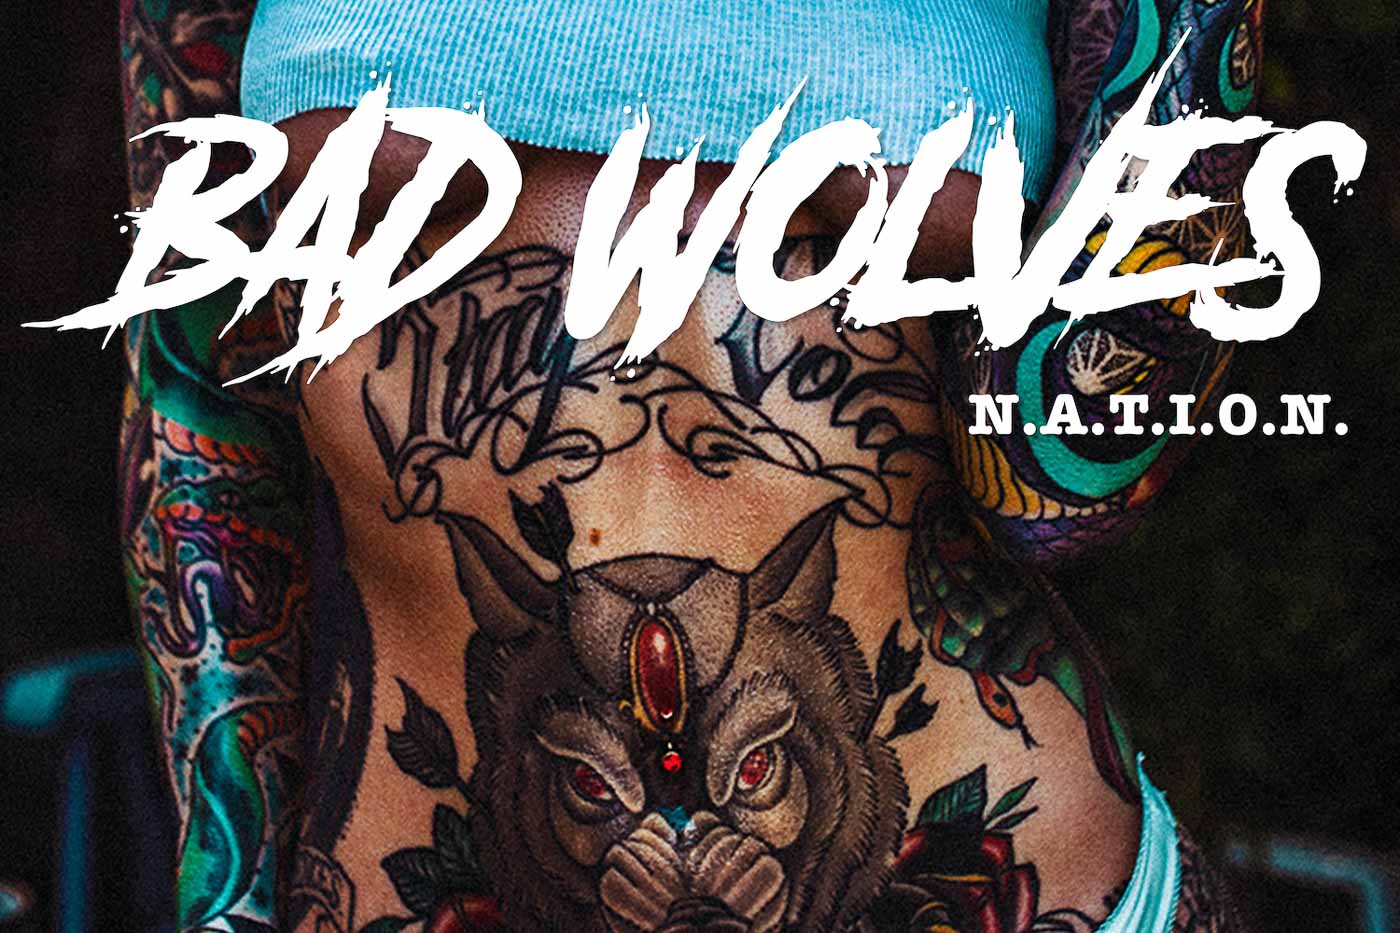 Bad wolves песни. Bad Wolves обложка. Bad Wolves Nation обложка. Bad Wolves альбом. Bad Wolves - n.a.t.i.o.n. (2019).